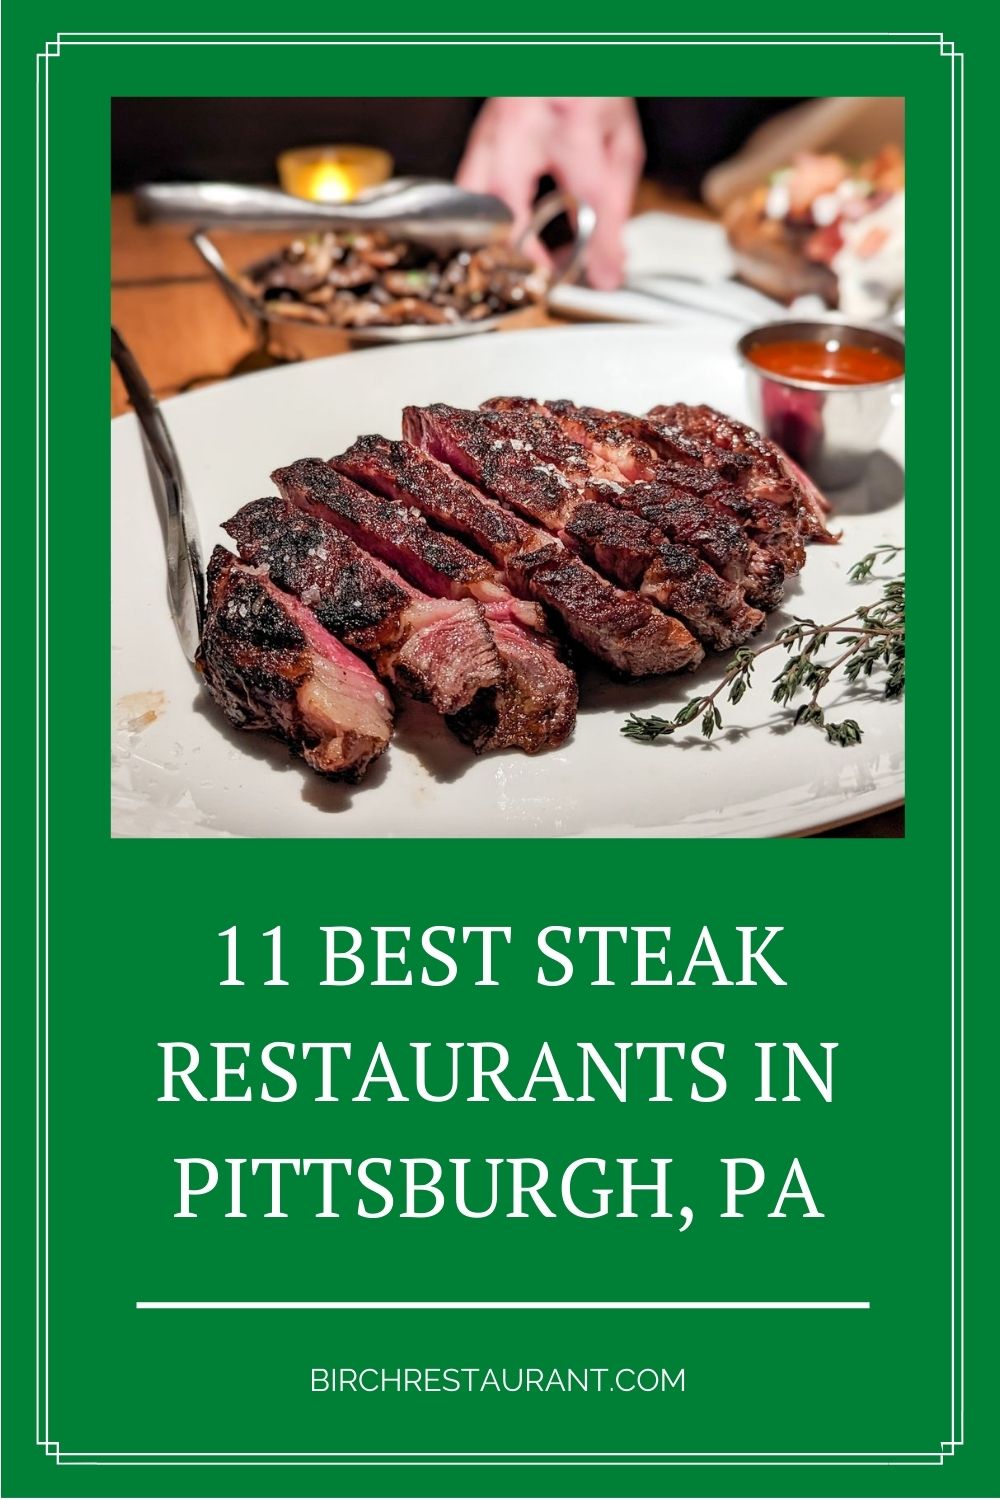 Best Steak Restaurants in Pittsburgh